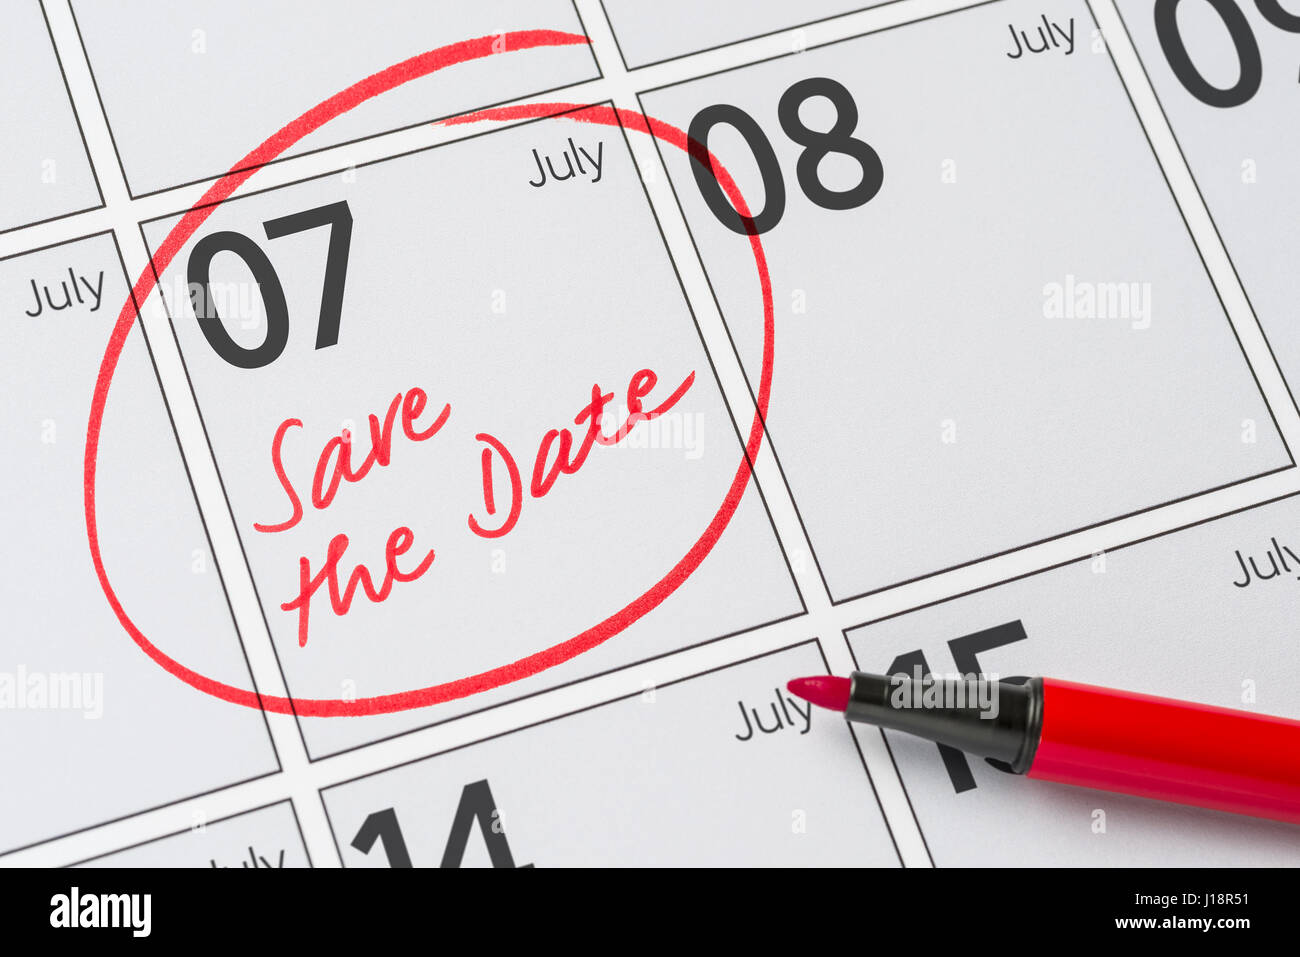 Enregistrer la date inscrite sur un calendrier - Juillet 07 Banque D'Images